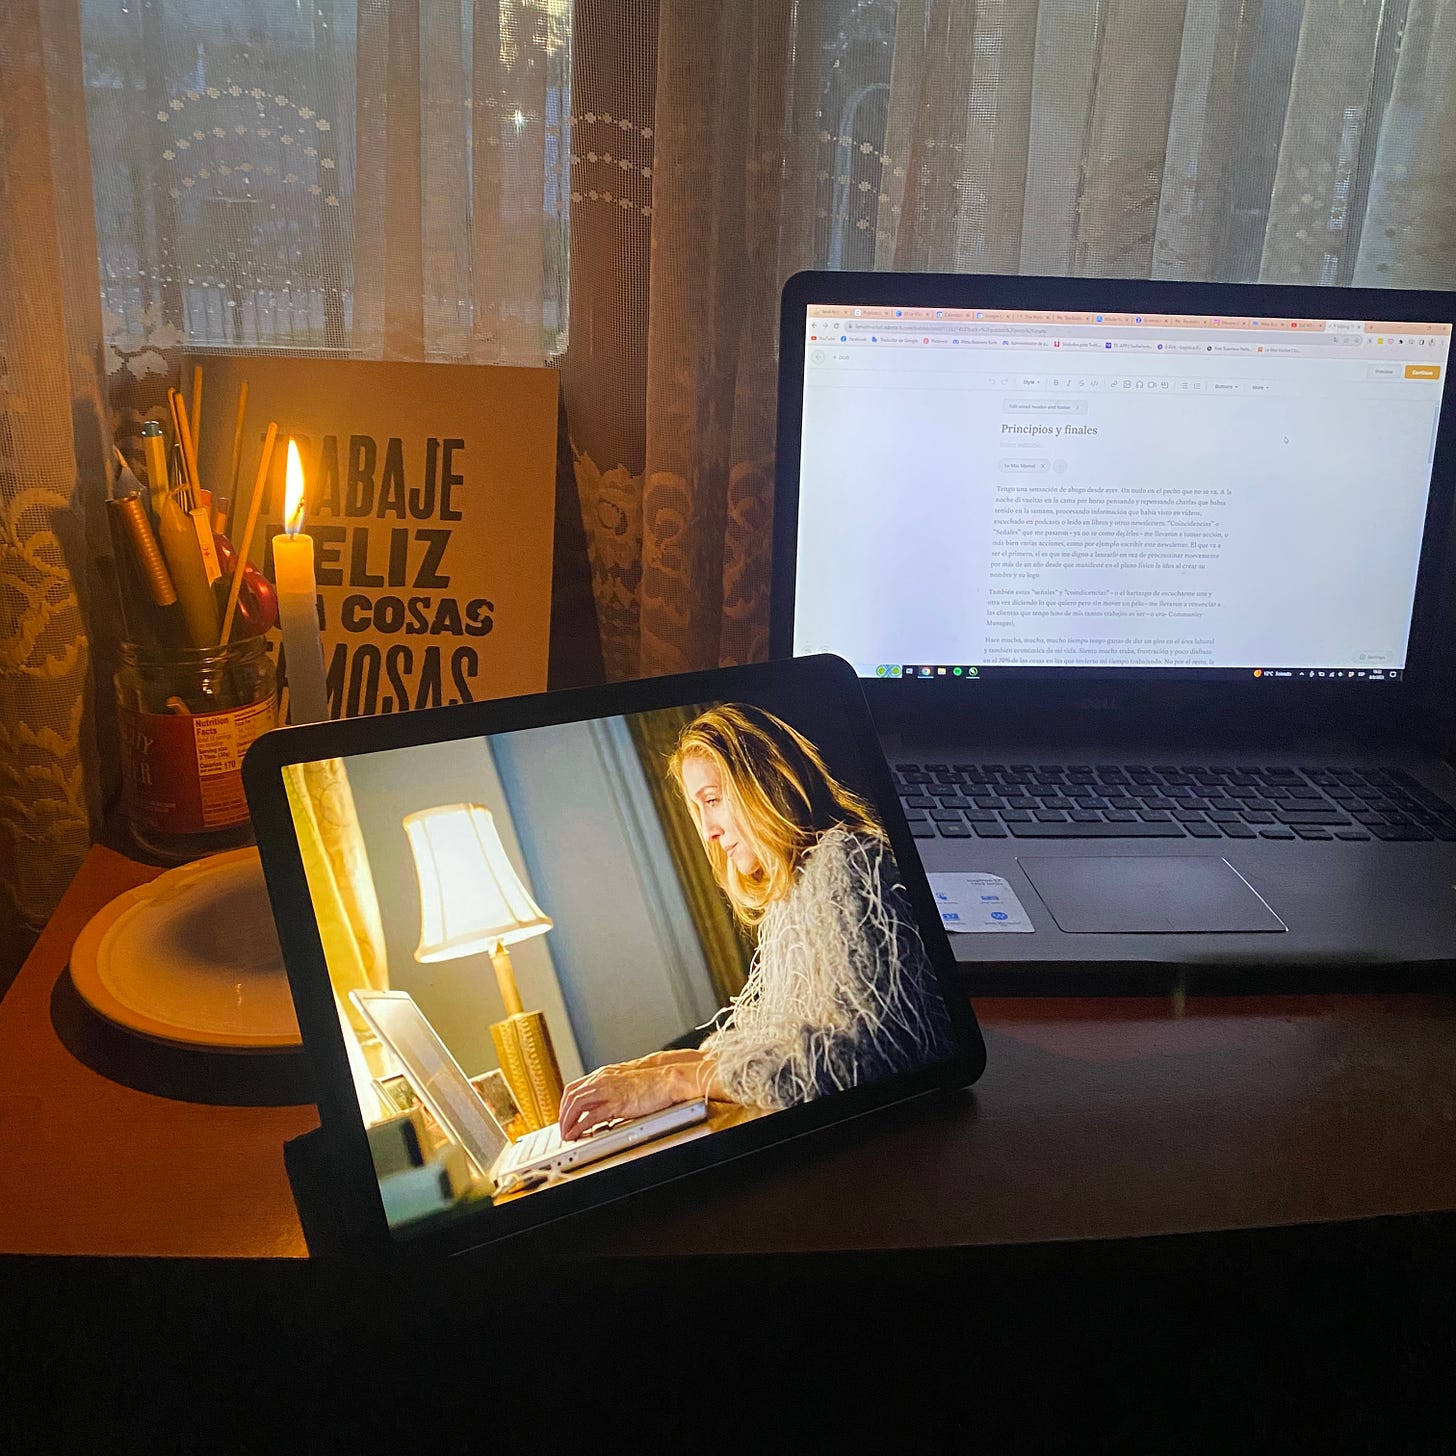 Imagen de mi escritorio con mi laptop, una vela y una imagen de Carrie Bradshaw escribiendo en su laptop